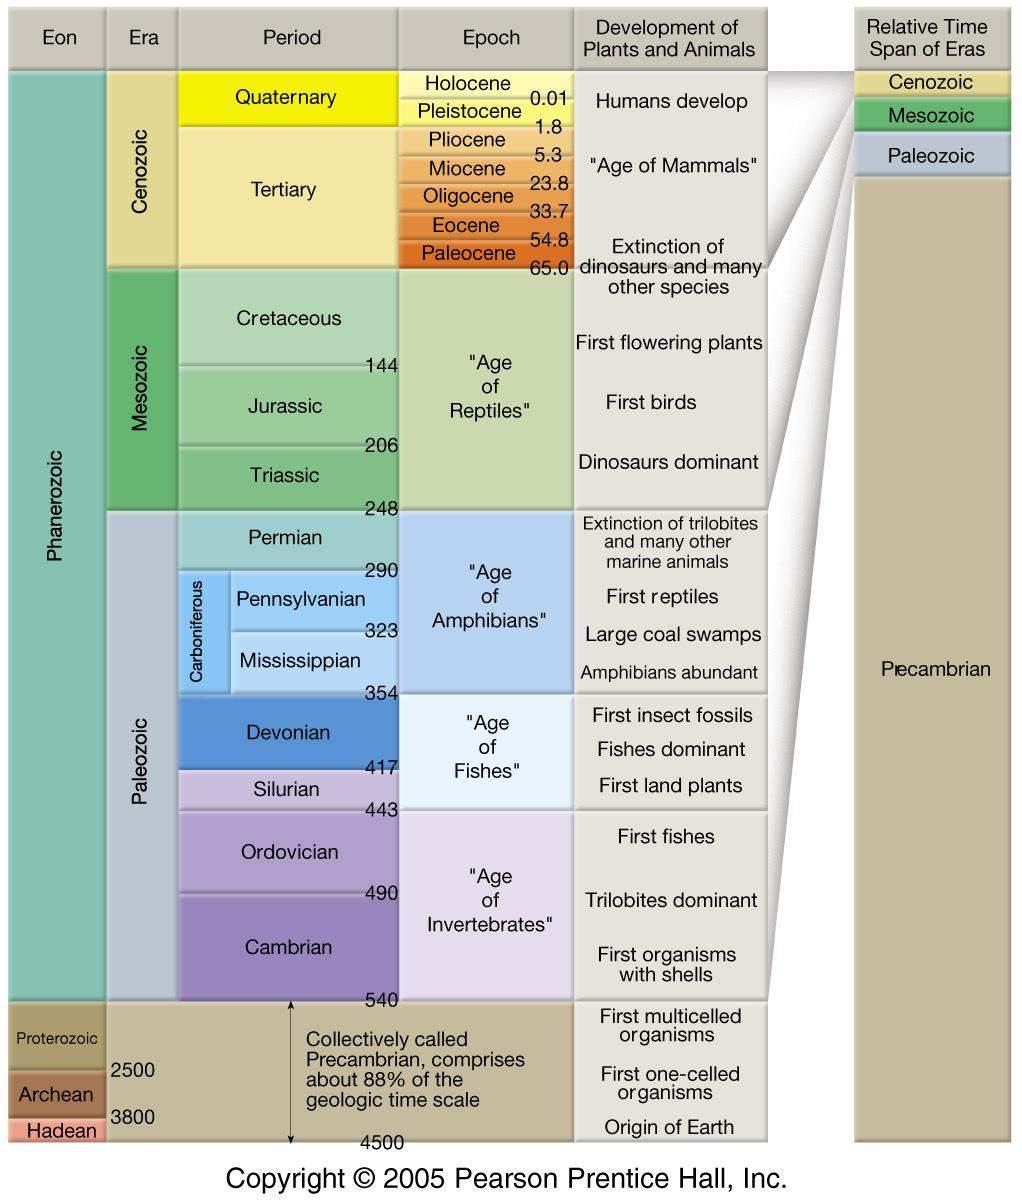 Eón Período Época Desarrollo de plantas y animales Espacio de tiempo relativo de las eras Fanerozoico Mesozoico Cenozoico Cuaternario Terciario Cretácico Jurásico Tirásico Pérmico Pensilvaniense